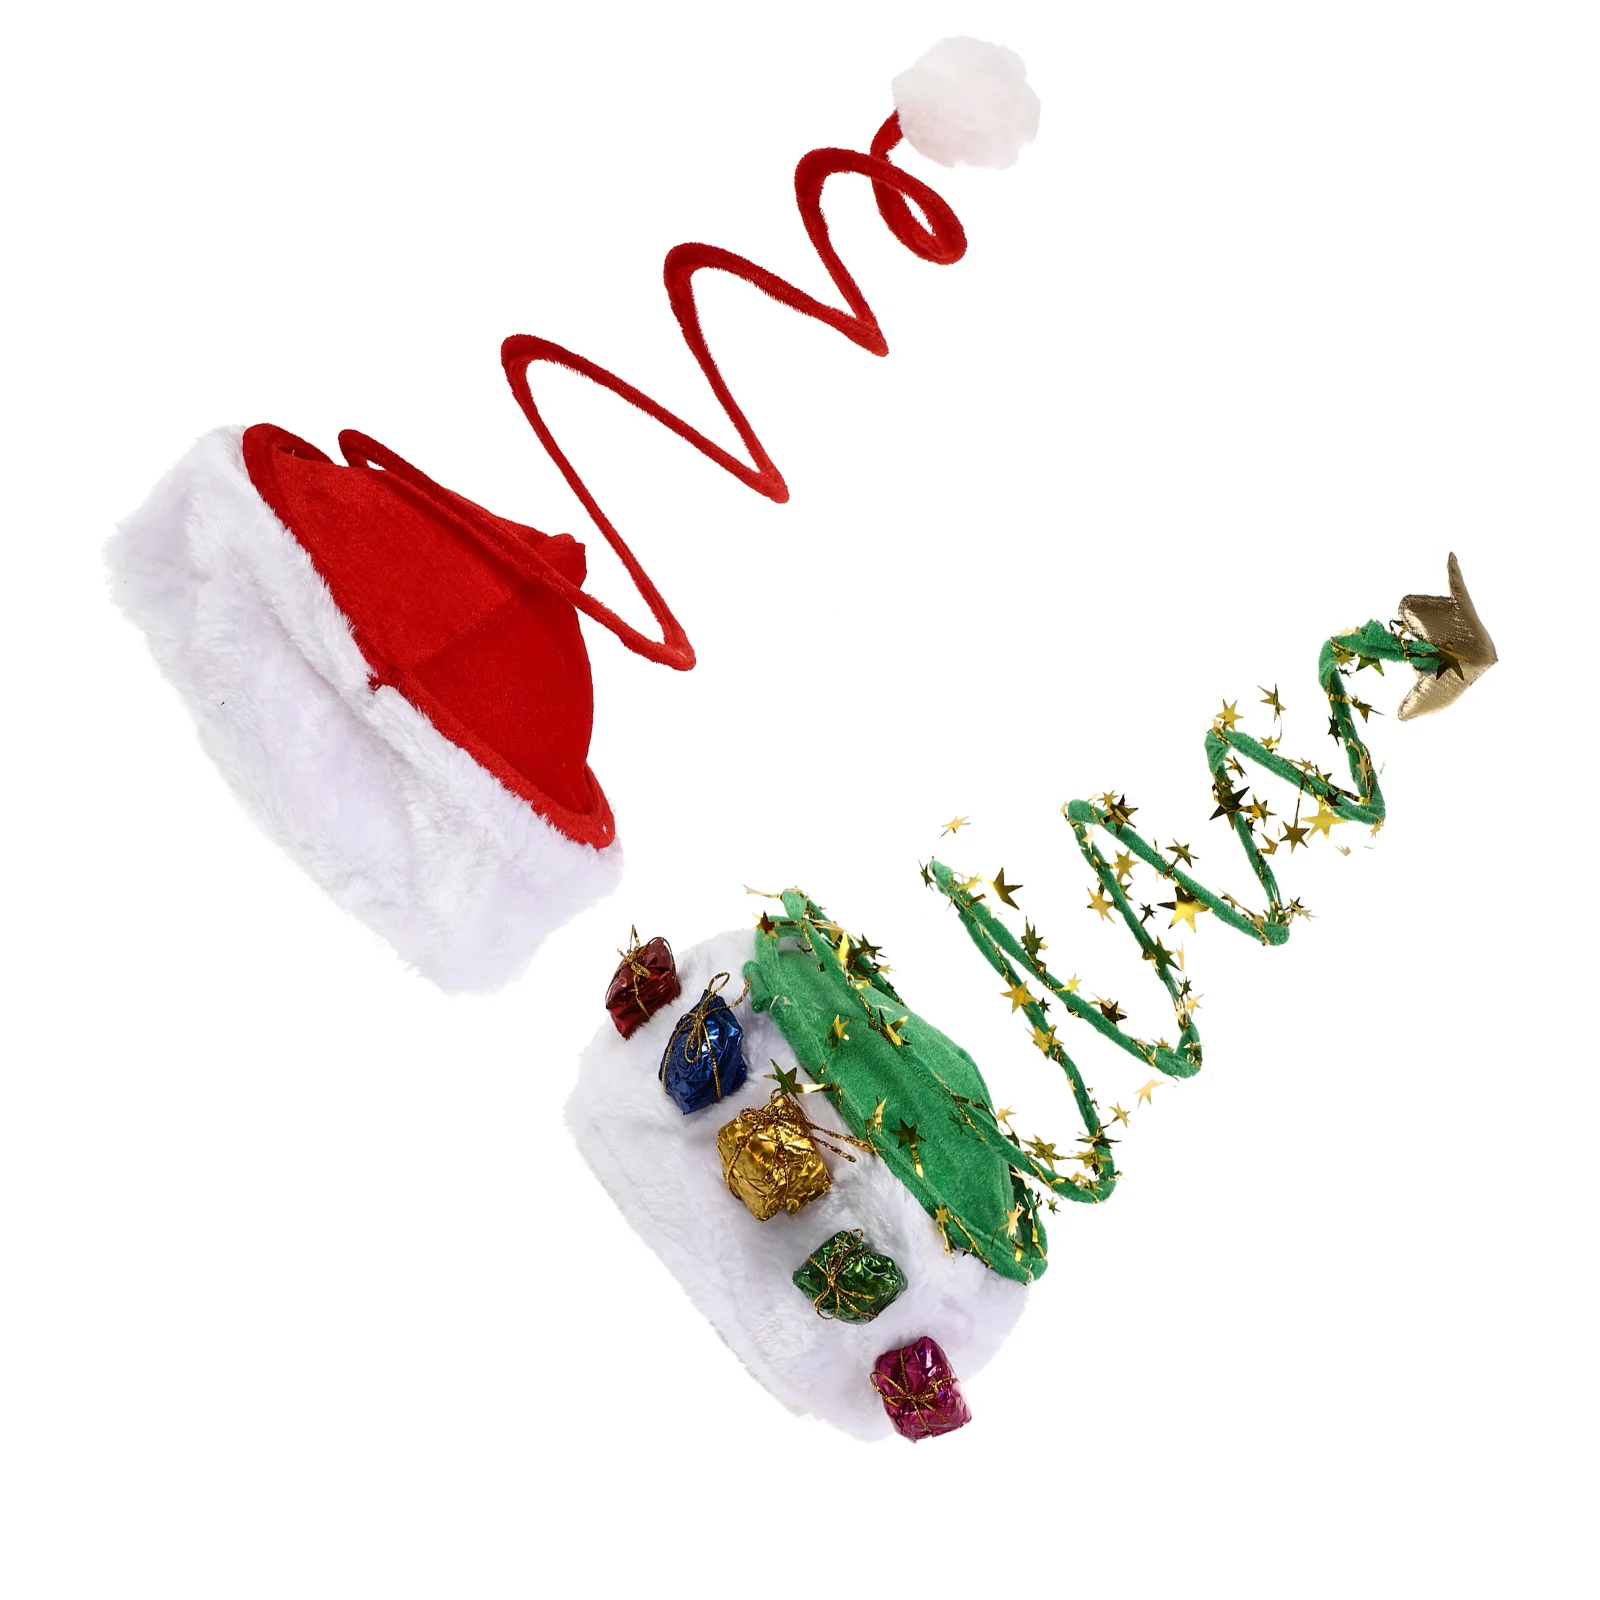 

Головной убор в виде шапки Санта-Клауса, праздничный головной убор, декоративный головной убор для рождественской вечеринки, стильные весенние платья